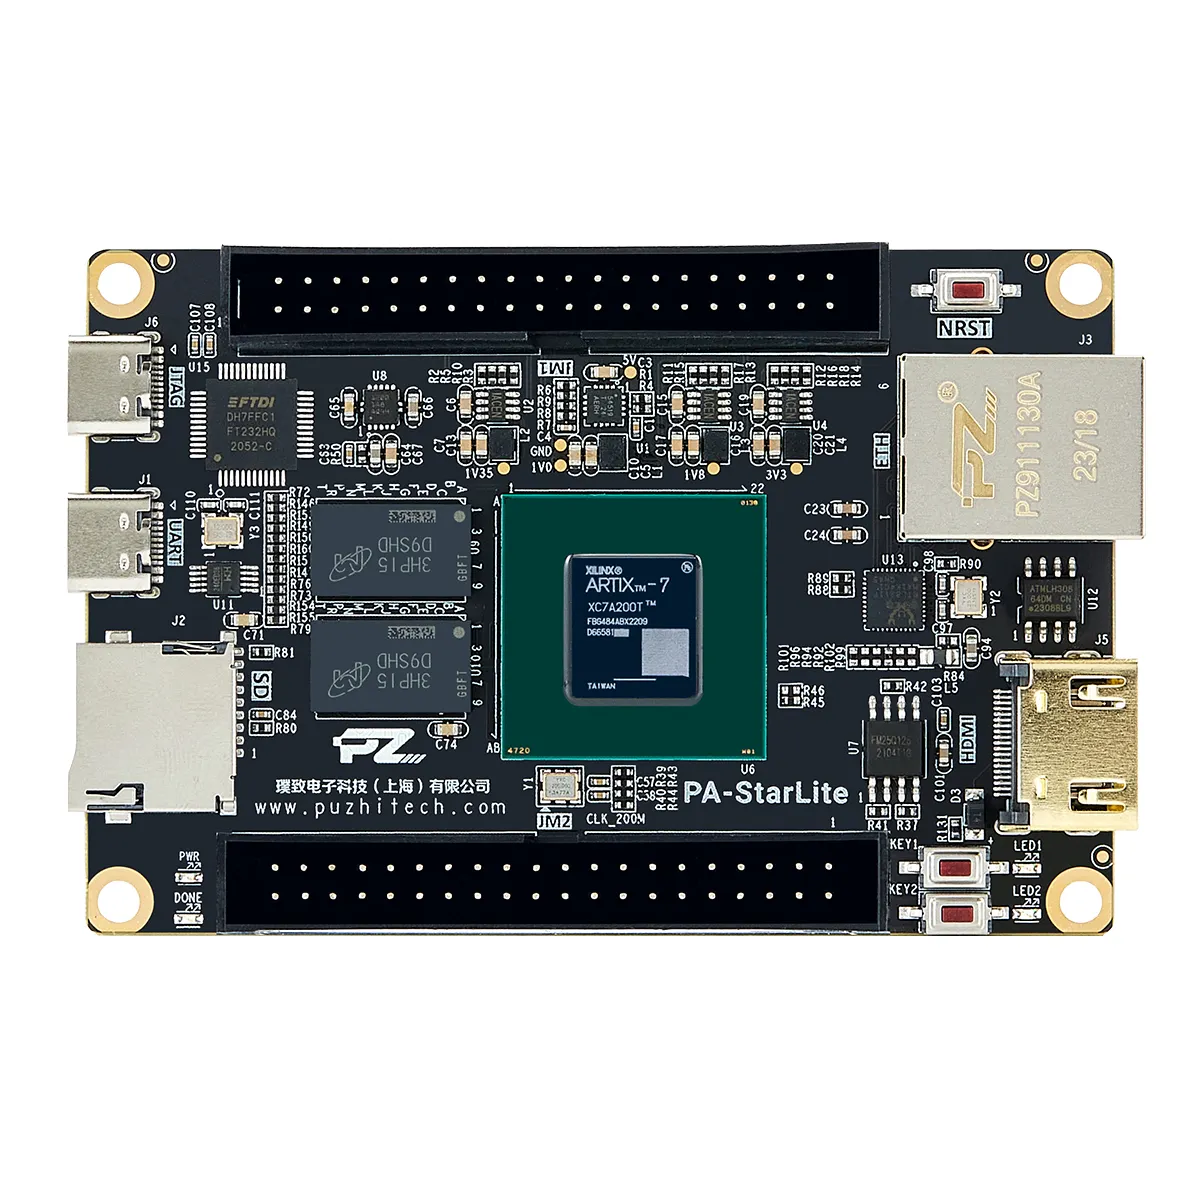 शुरुआती MIPI गीगाबिट ईथरनेट ऑन-बोर्ड JTAG डाउनलोडर के लिए Fpga सोम फ्रेंडली आर्टिक्स 7 A735T छोटे आकार का Xilinx Fpga बोर्ड